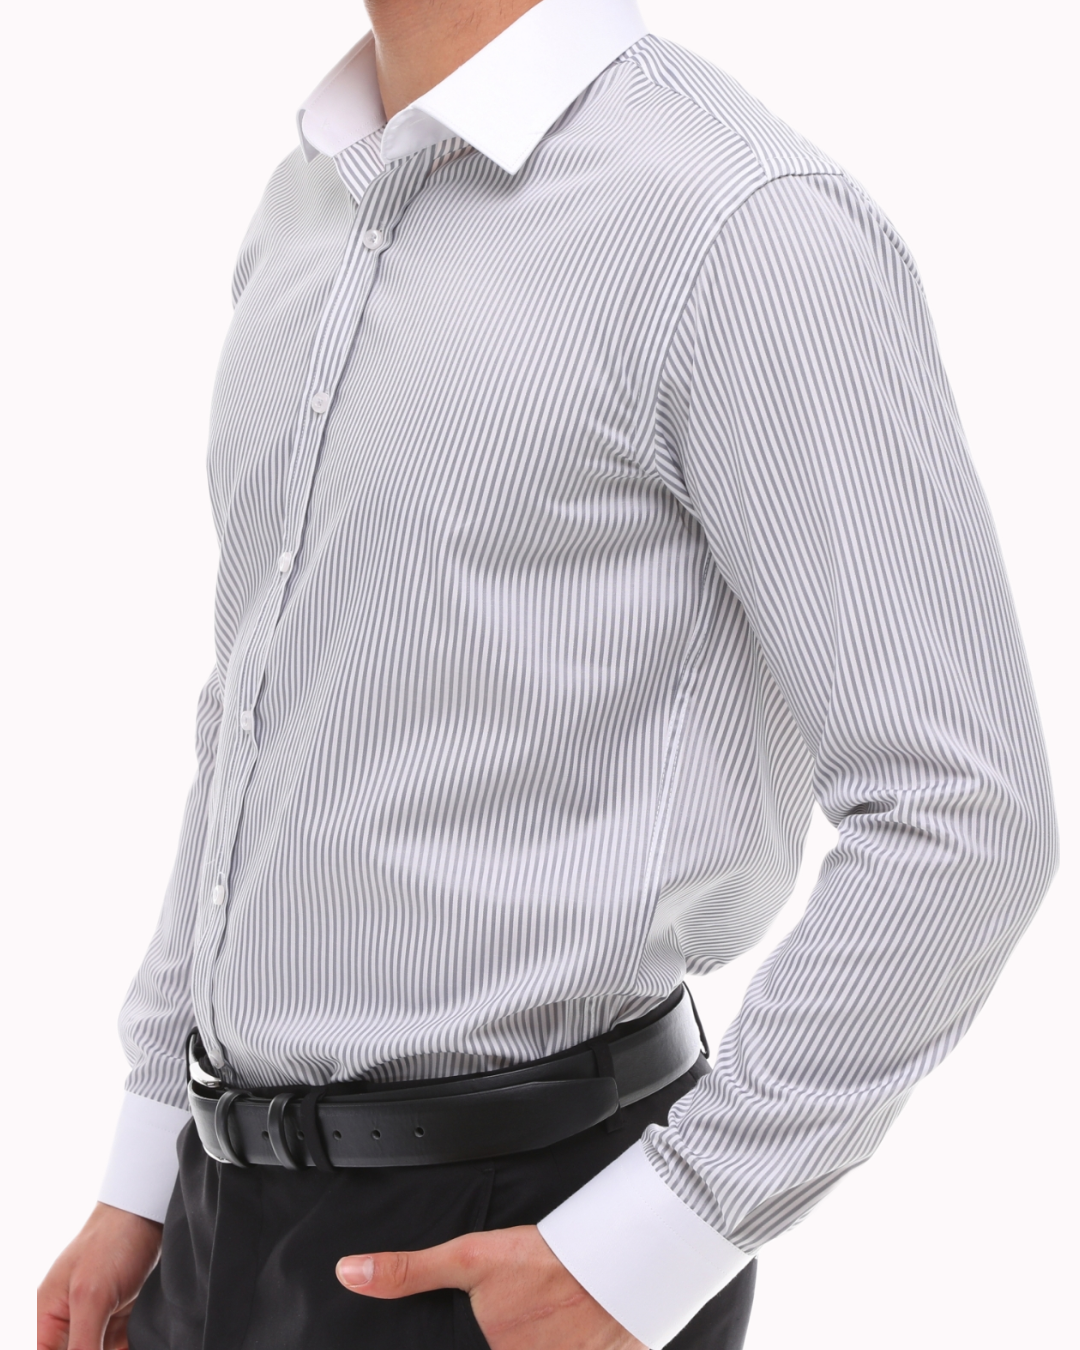 Grau-weiß gestreiftes Hemd mit weißem Kragen - Einfaches Bügeln gestreiftes graues Hemd